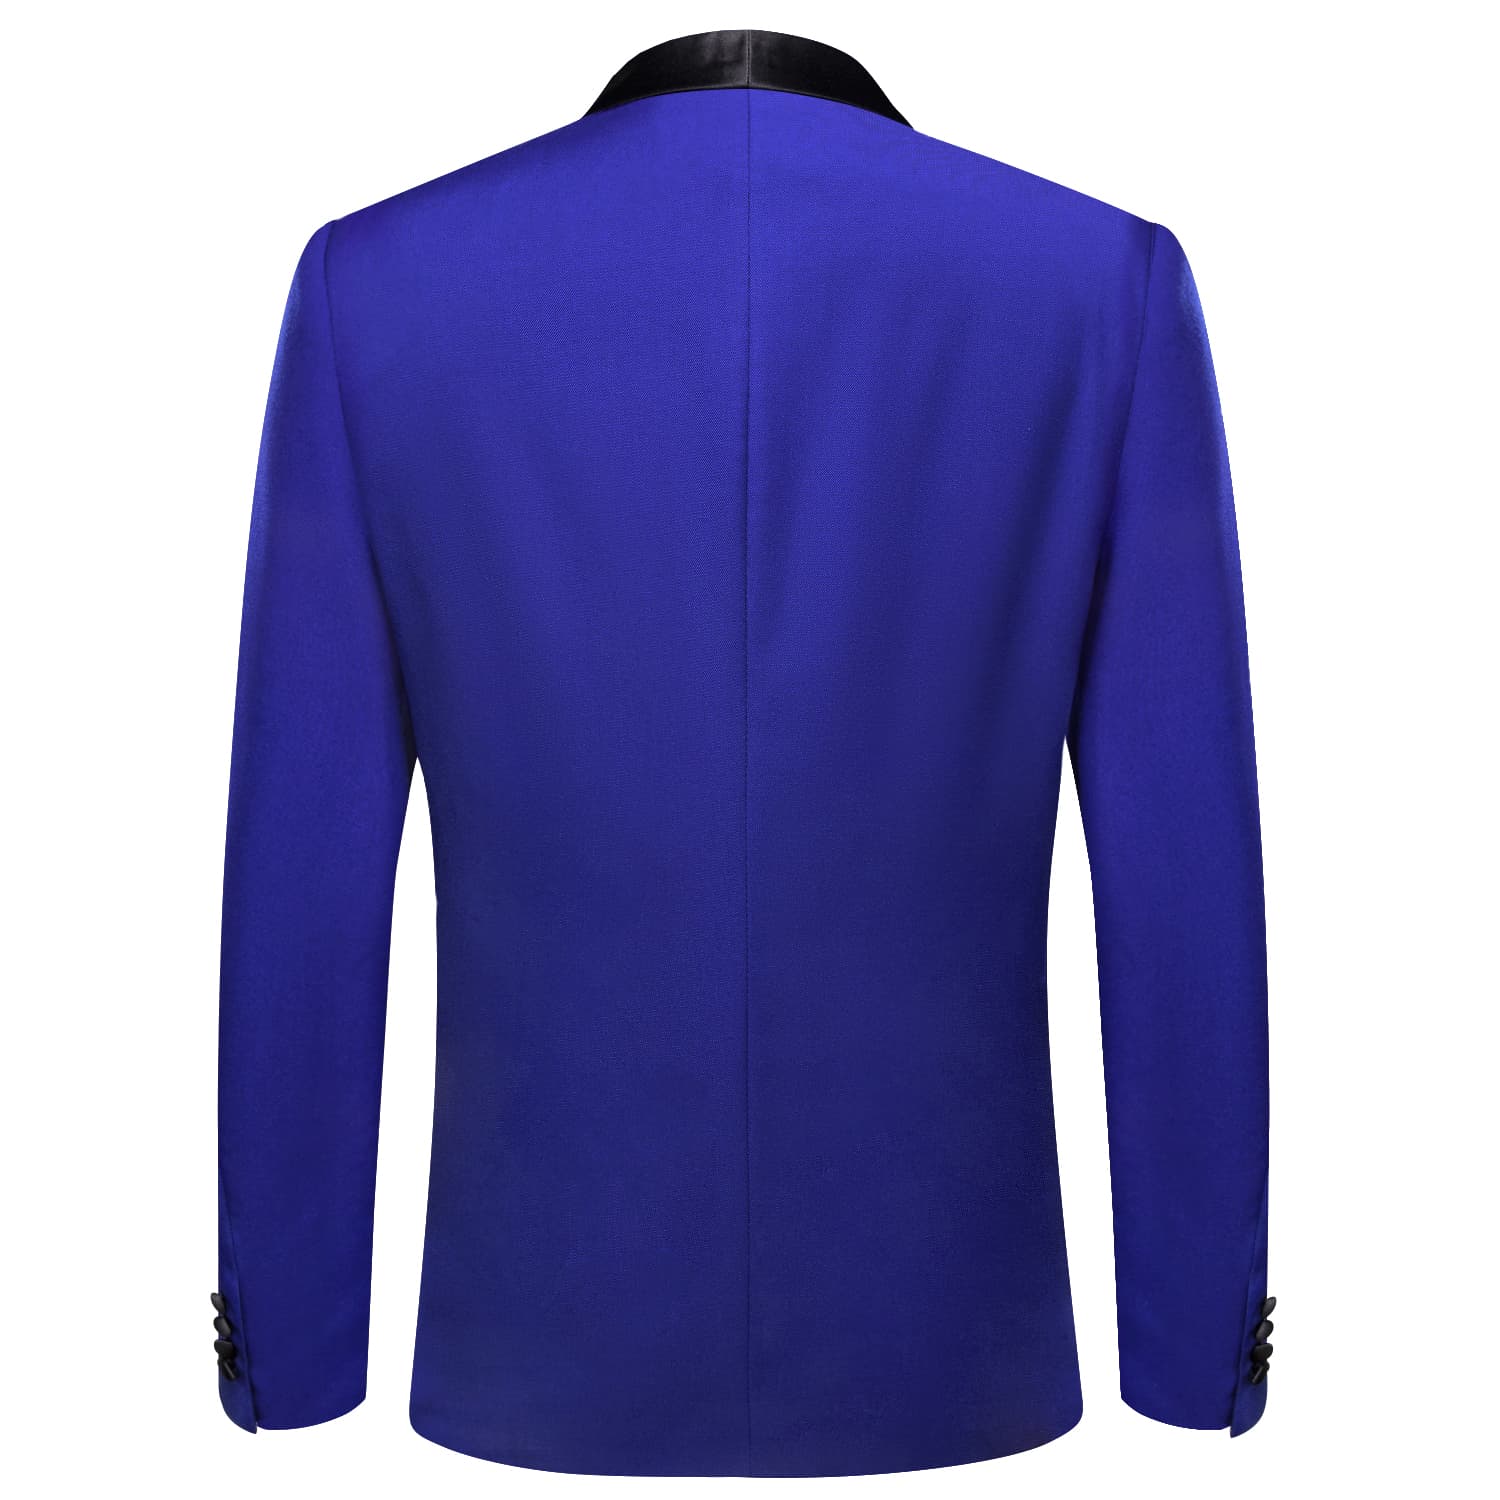 Black Shawl Collar Navy Blue Solid Blazer Bowtie Suit Set